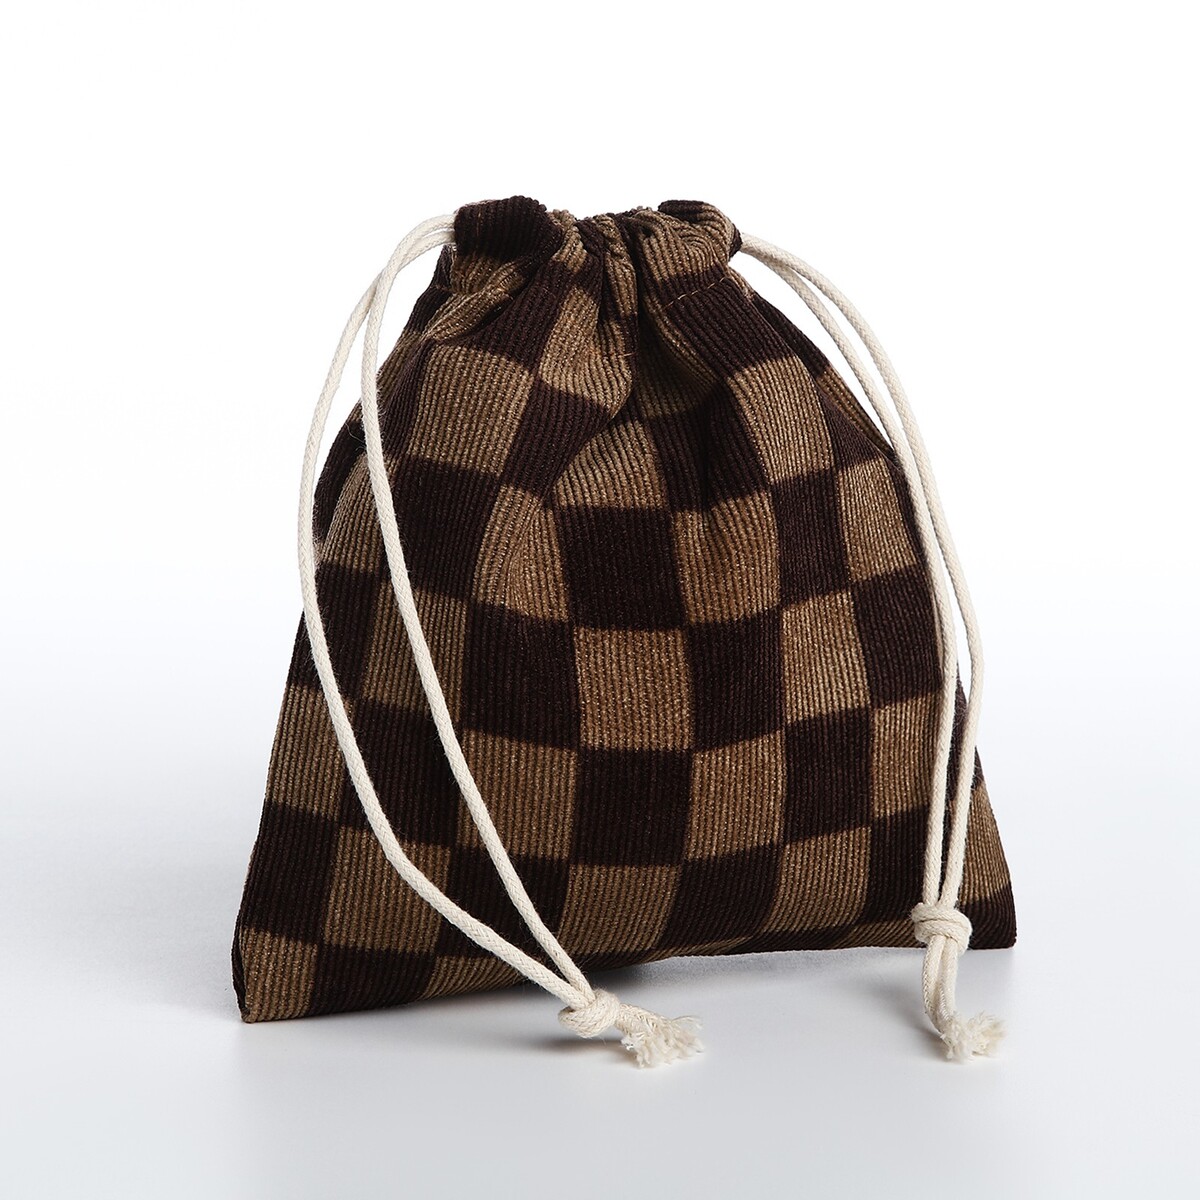 Косметичка - мешок с завязками, цвет коричневый кресло мешок пятигранный диаметр 82 см высота 110 см коричневый